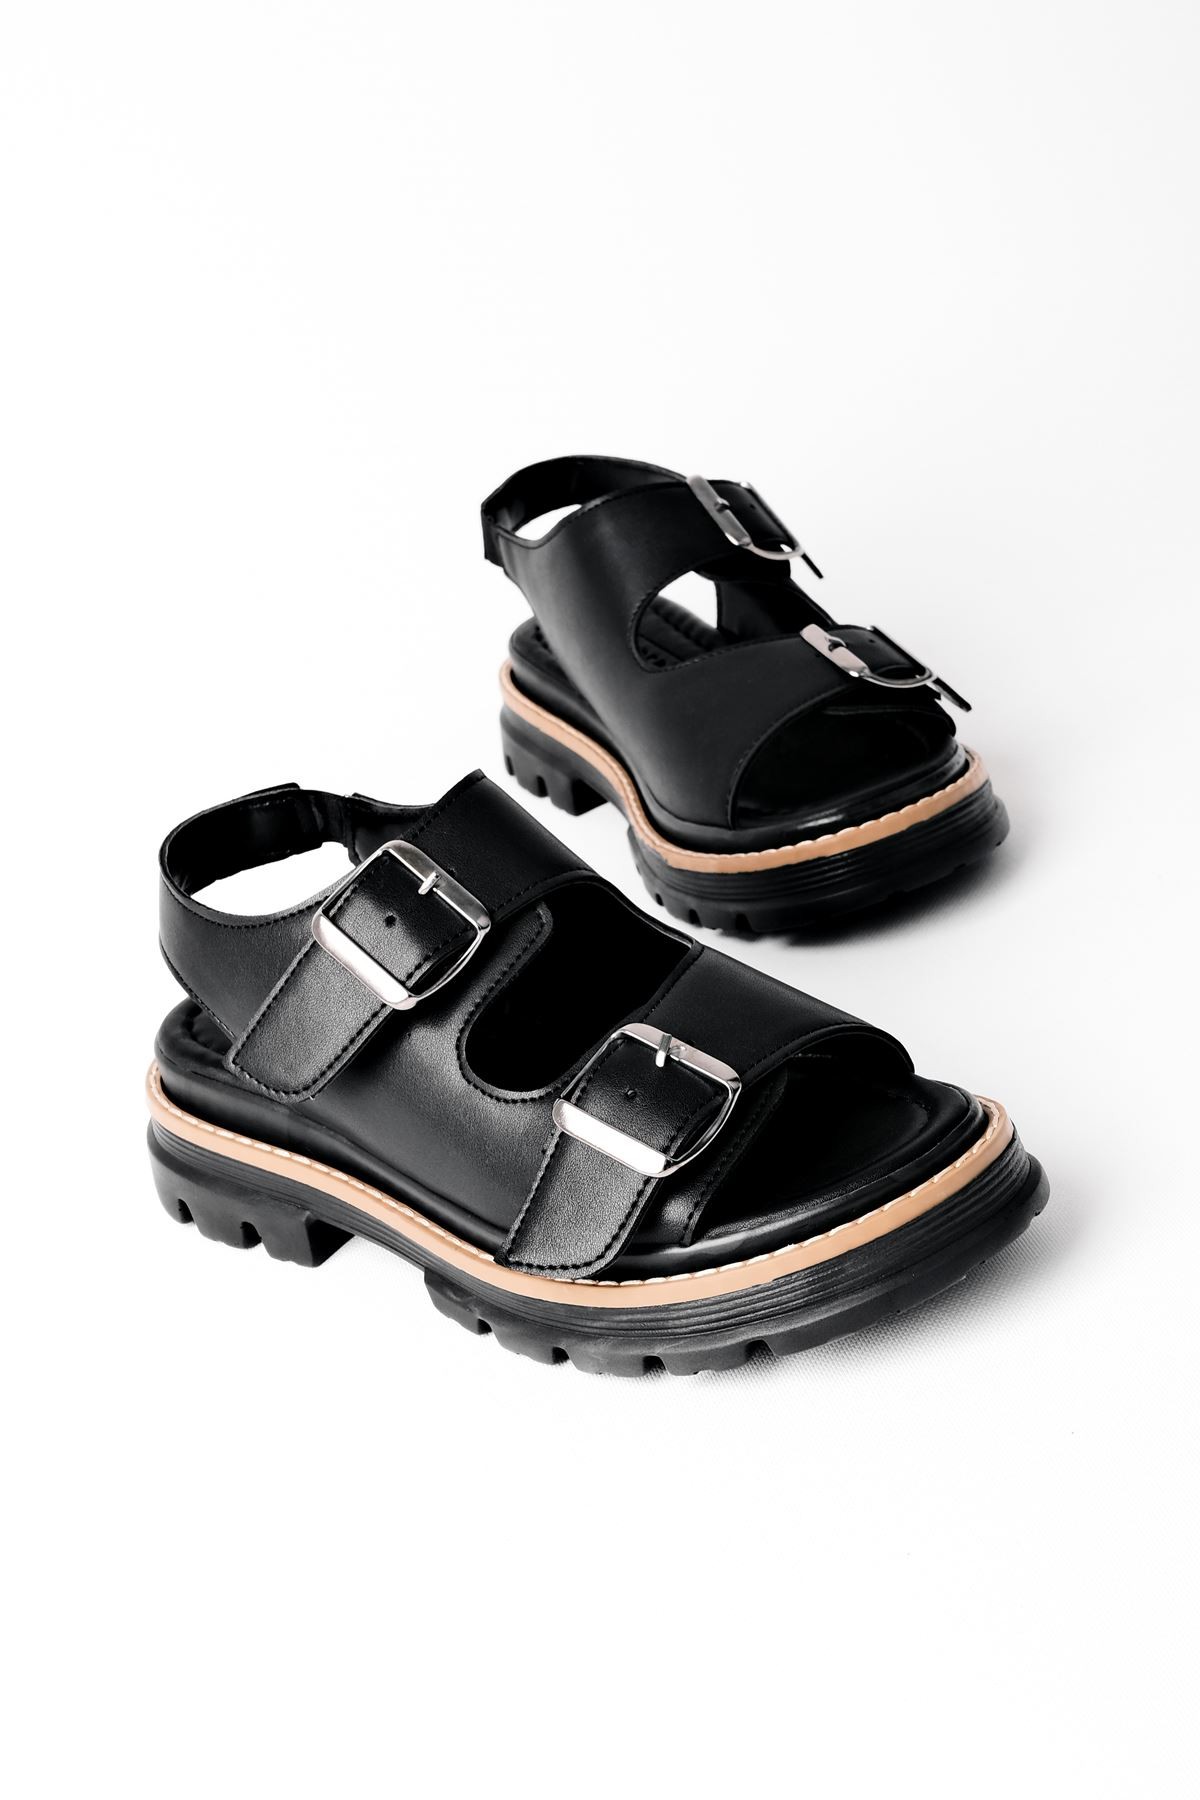 Serny İki Kemeli Kadın Sandalet B3250 - Siyah